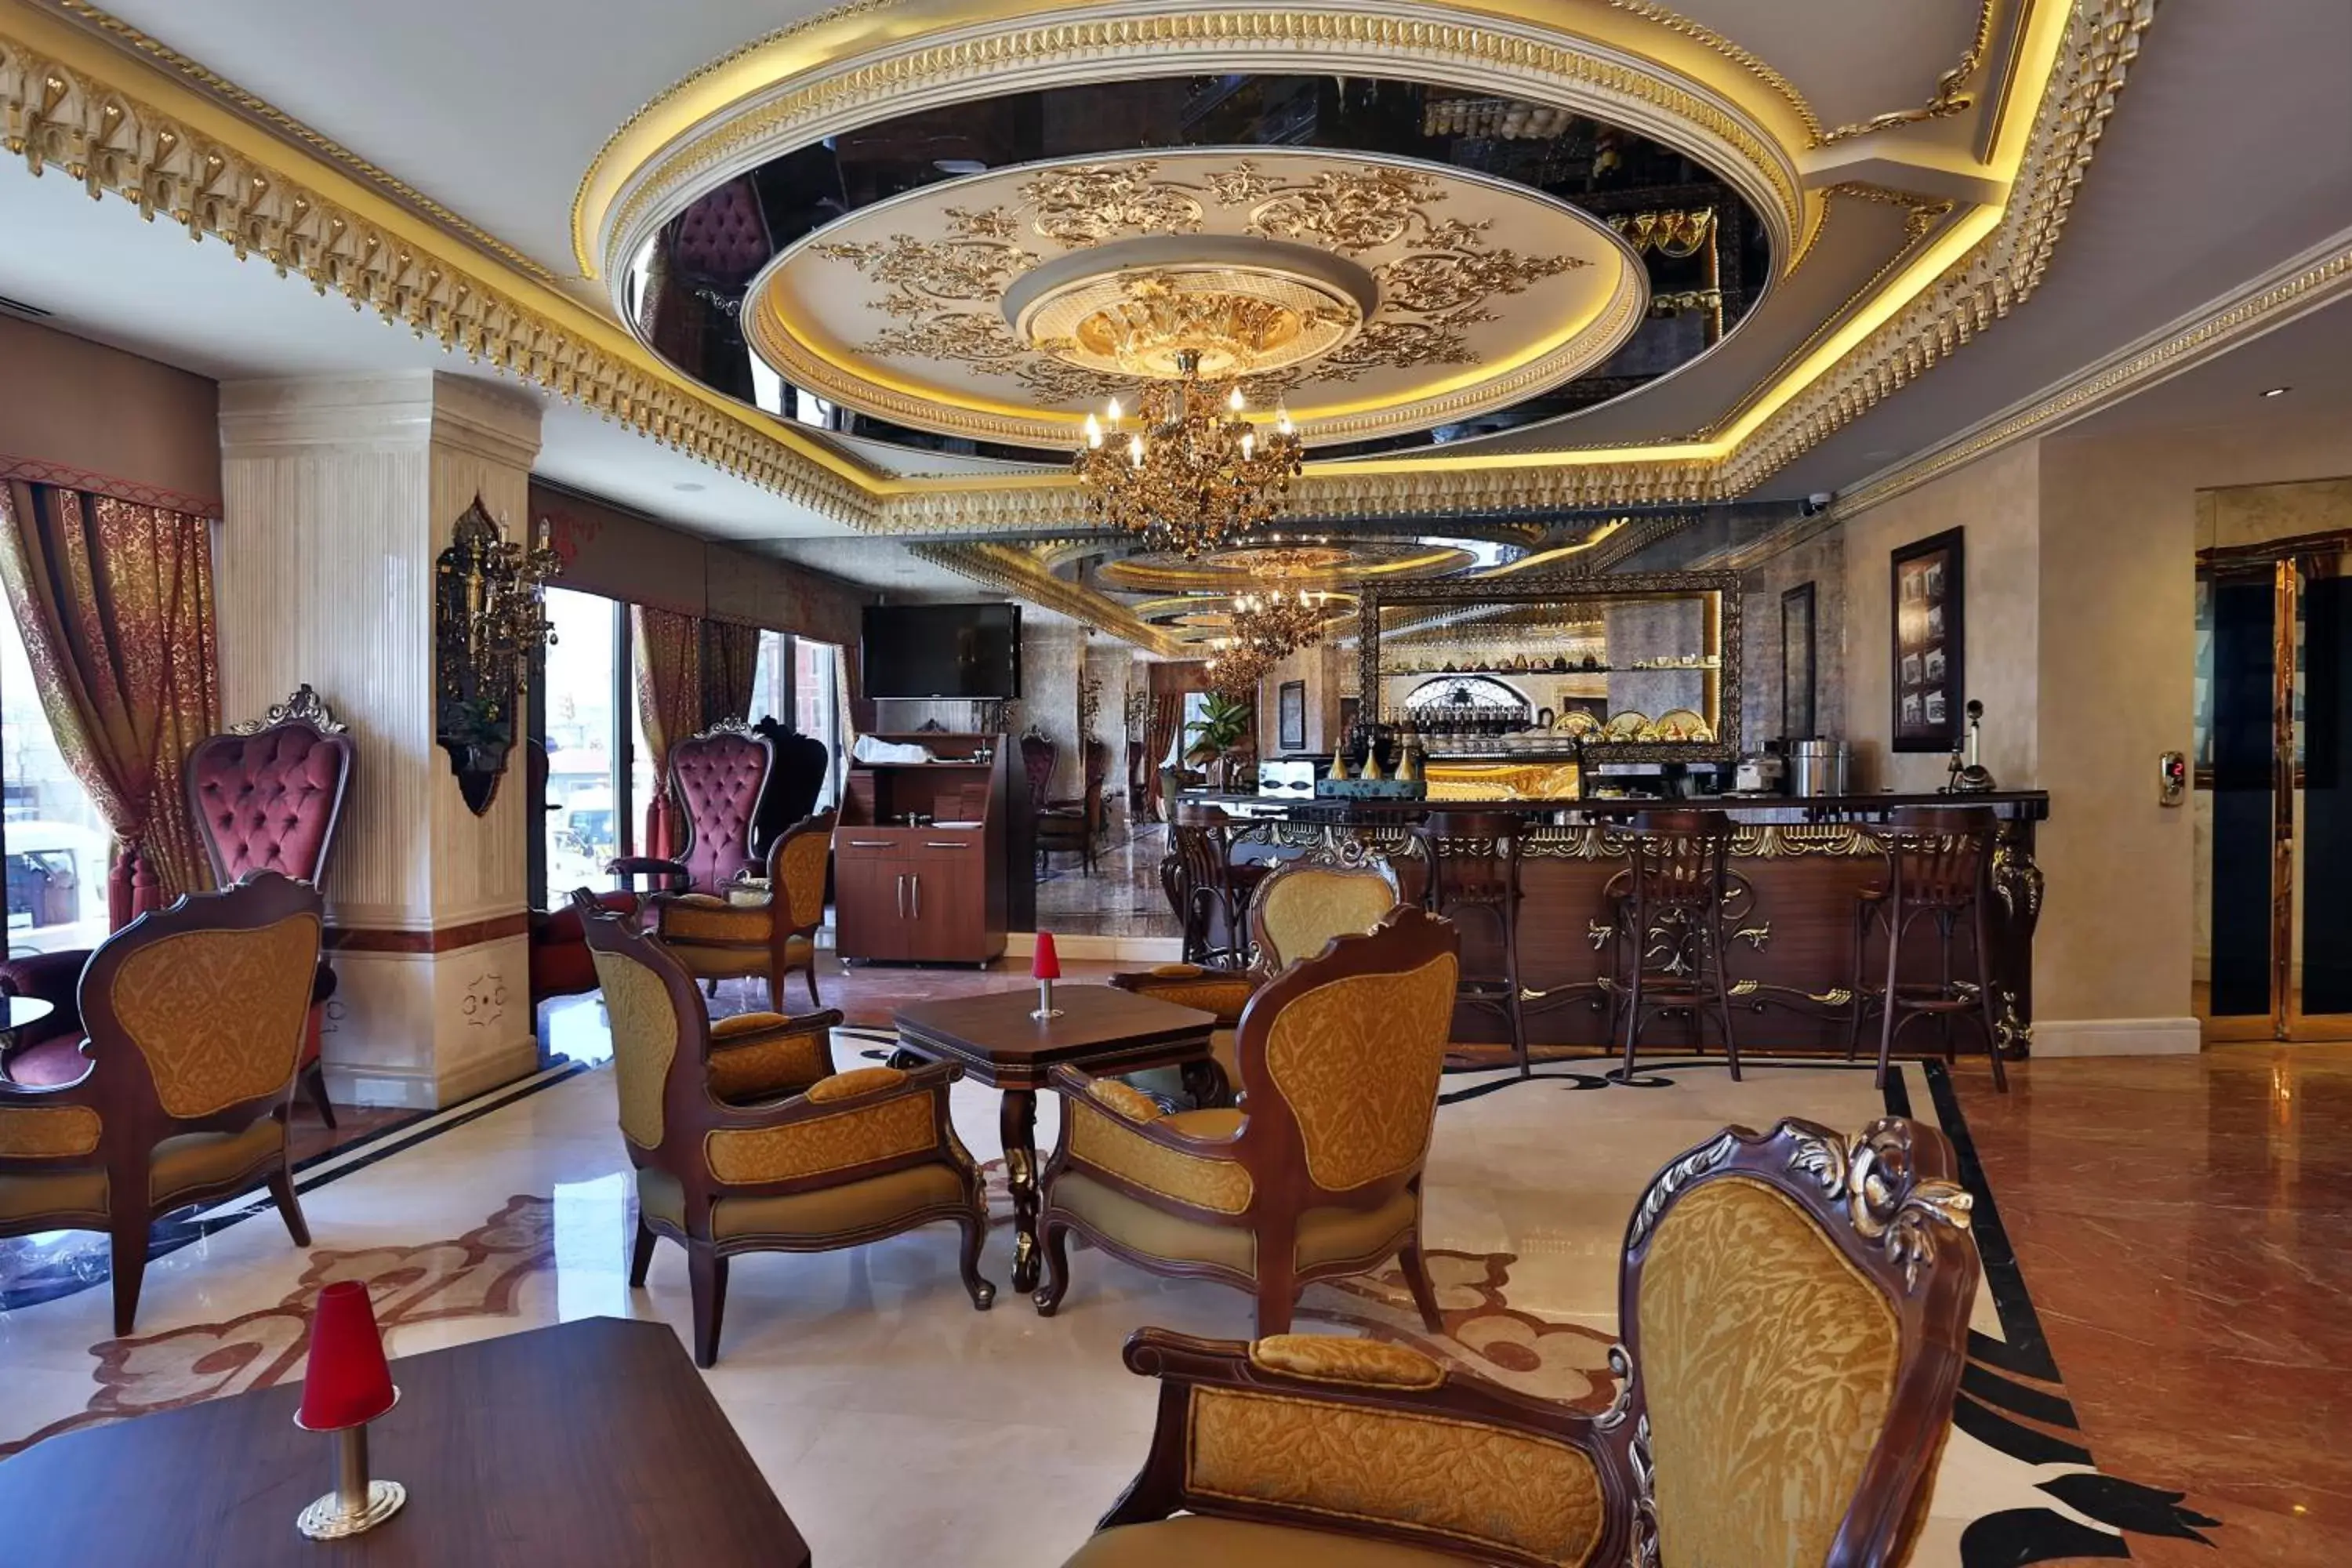 Lobby or reception in Daru Sultan Hotels Galata